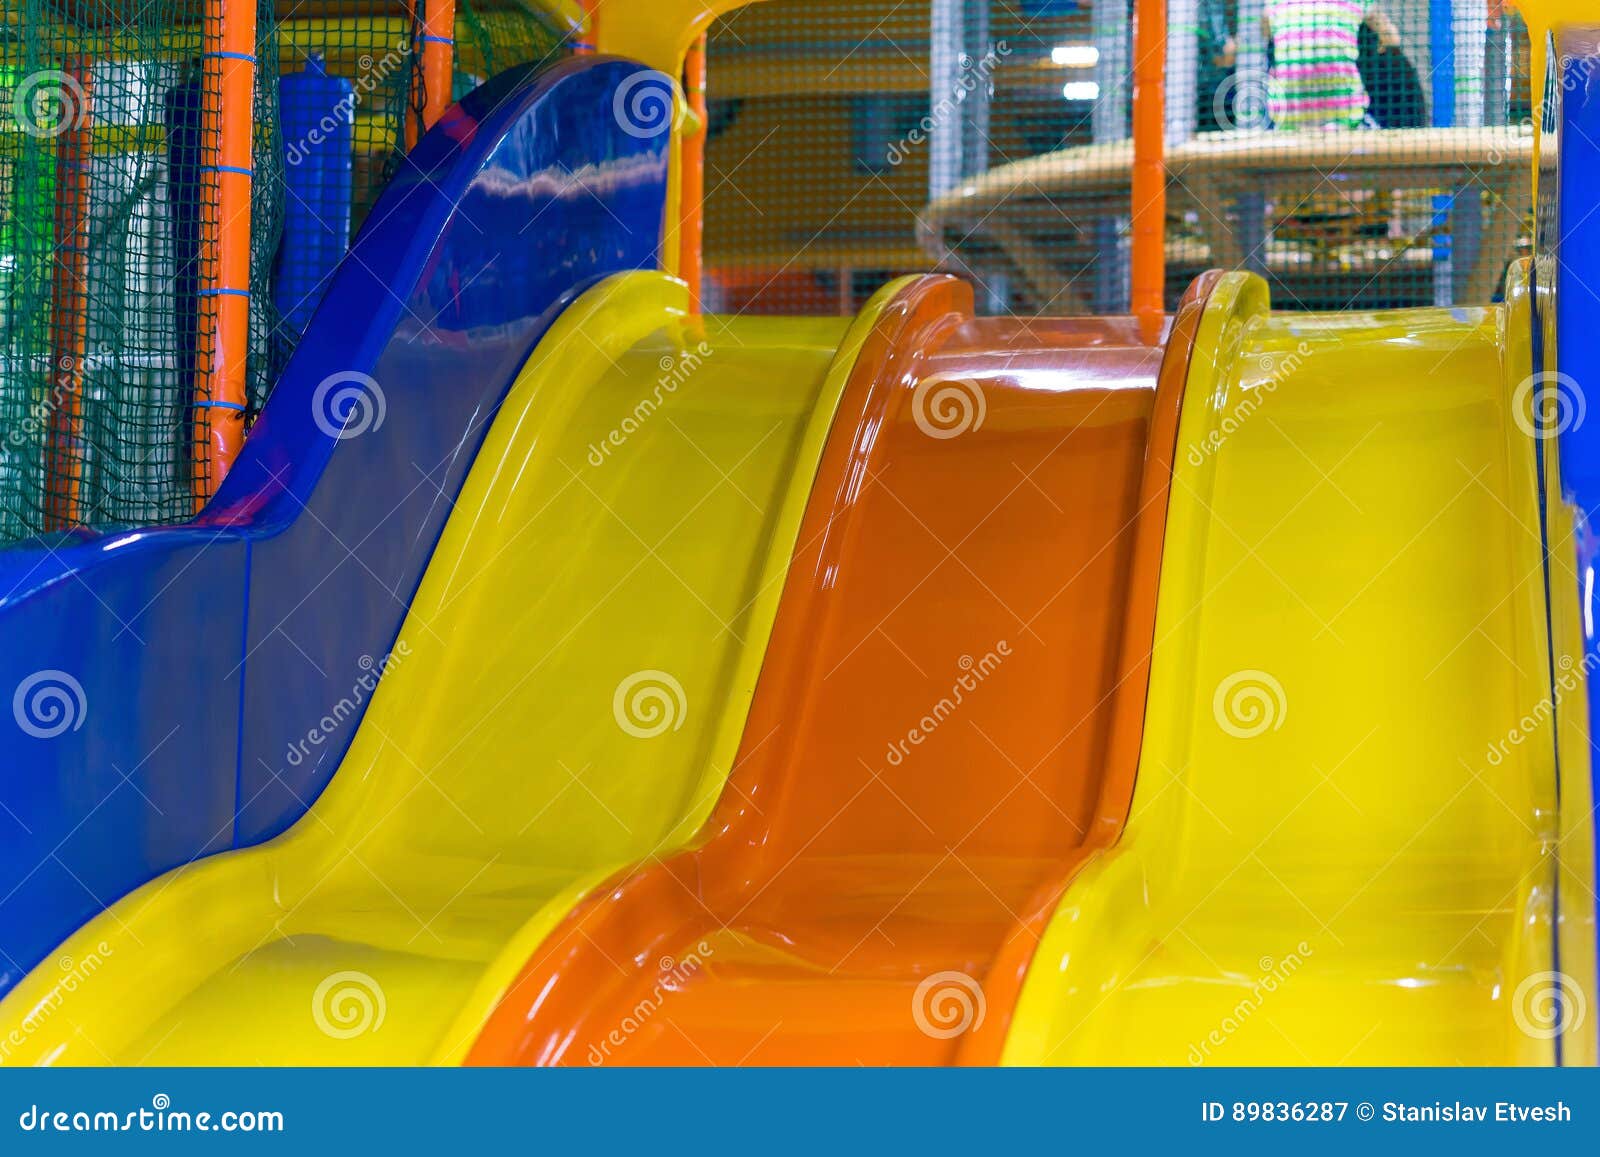 Plastic Slide for Children at the Children`s Center Stock Image - Image ...